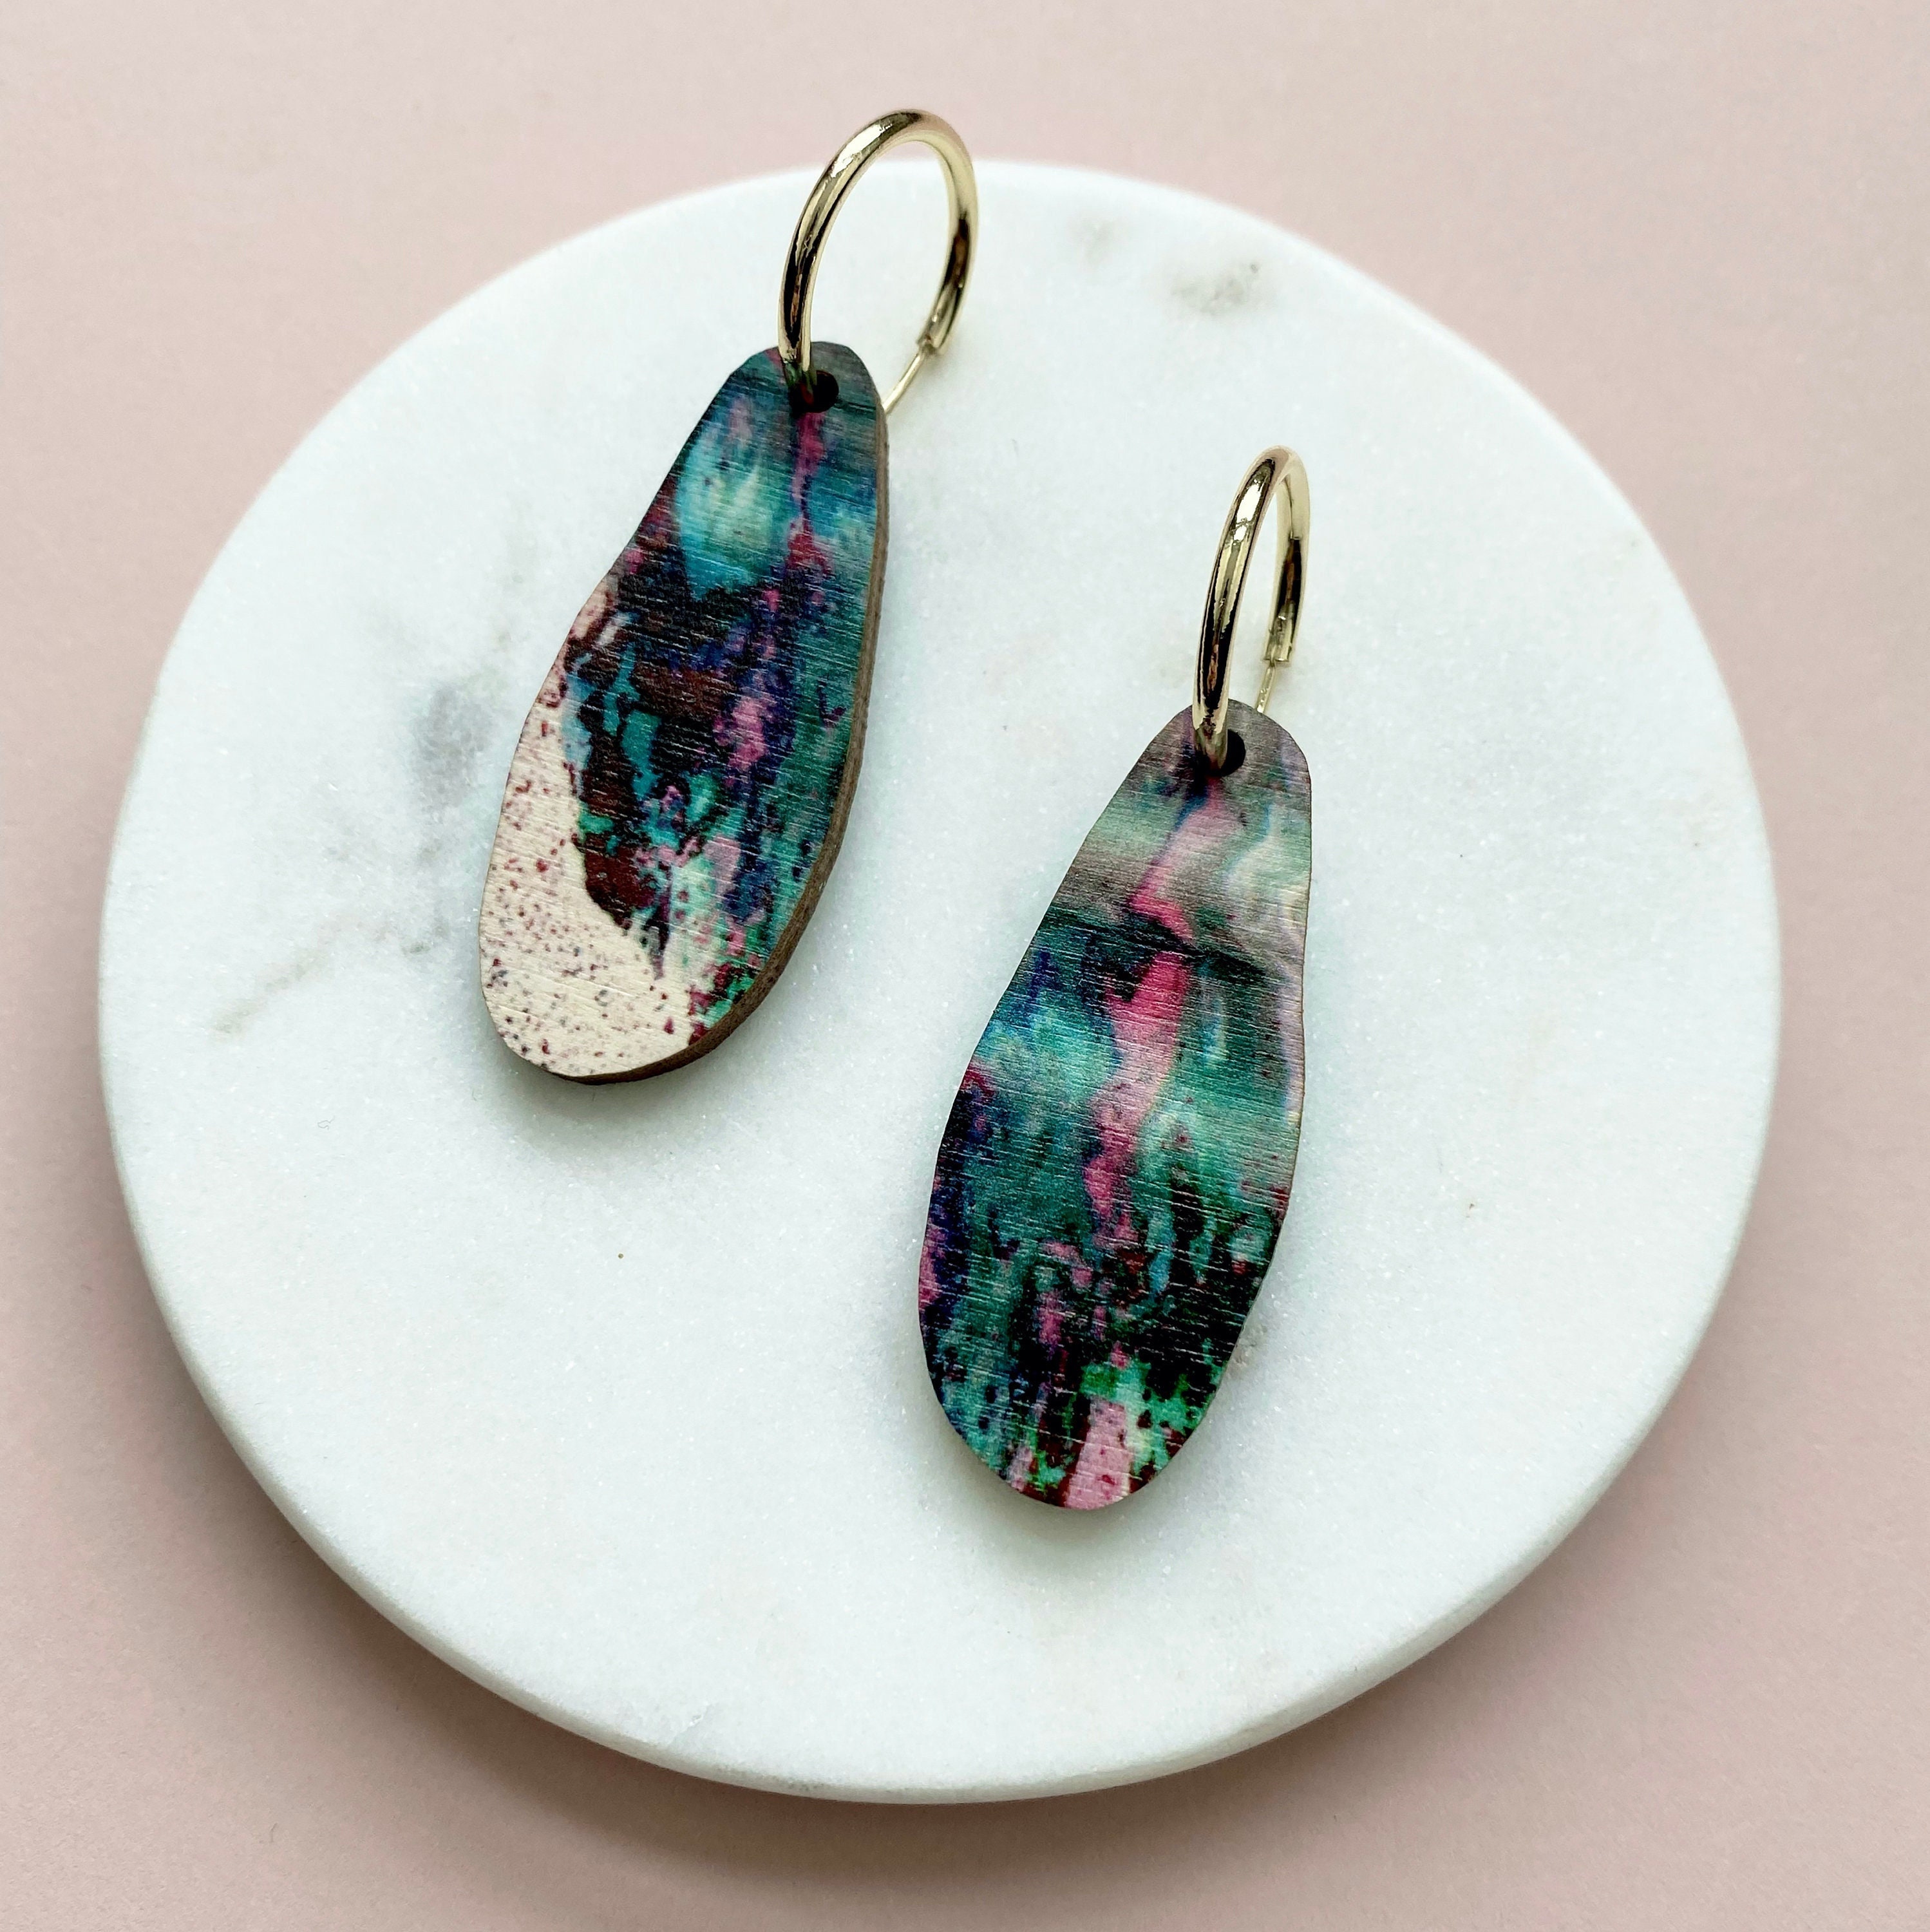 Pink & Teal Marble Hoop Earrings - Wiggle Organic Geometric Hoops Irregular Gifts For Her